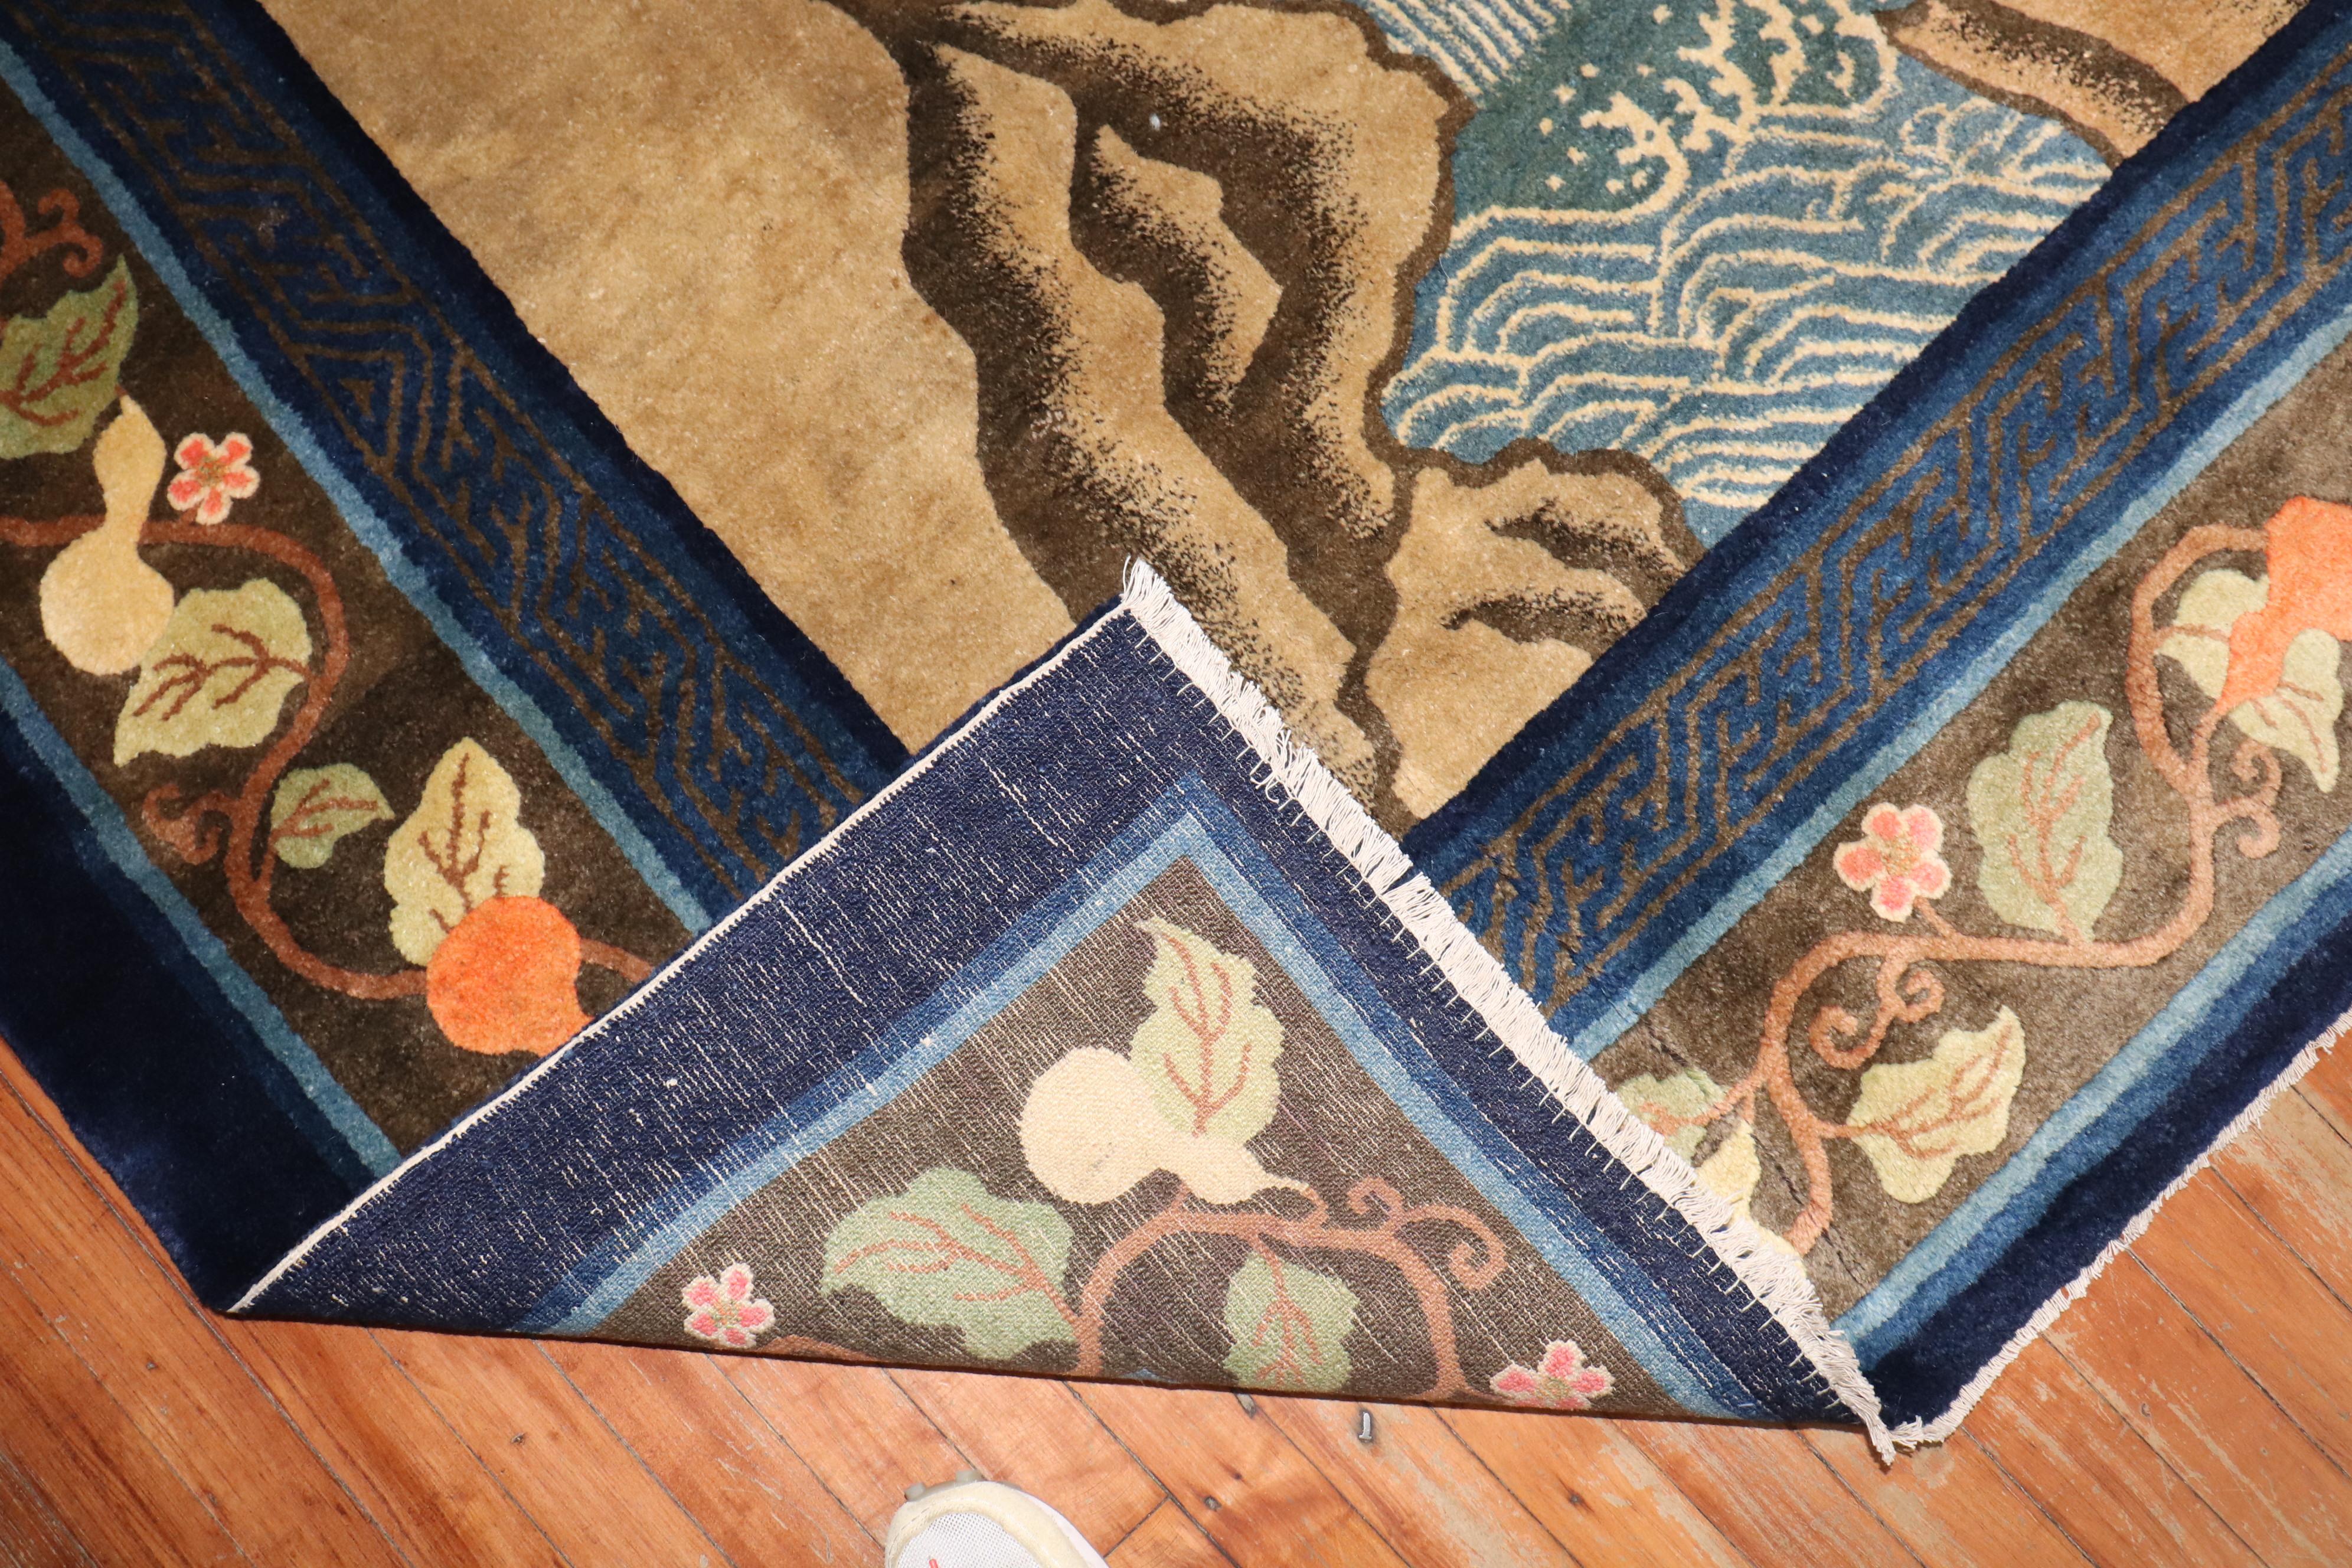 Ein chinesischer Teppich in Galeriegröße aus dem frühen 20. Jahrhundert mit einem landschaftlichen Bildmotiv.

Maße: 6' x 12'3''